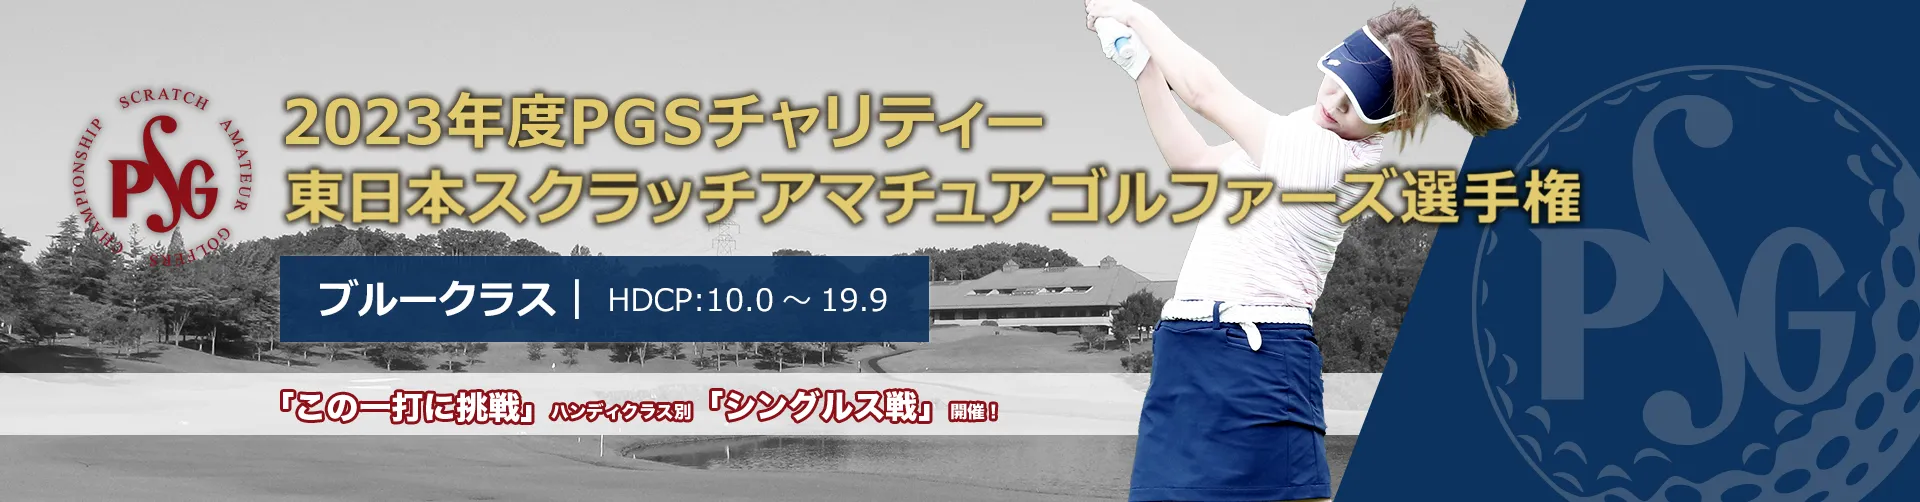 2023年度PGSチャリティー東日本スクラッチアマチュアゴルファーズ選手権_ブルークラス|HDCP:10.0~19.9